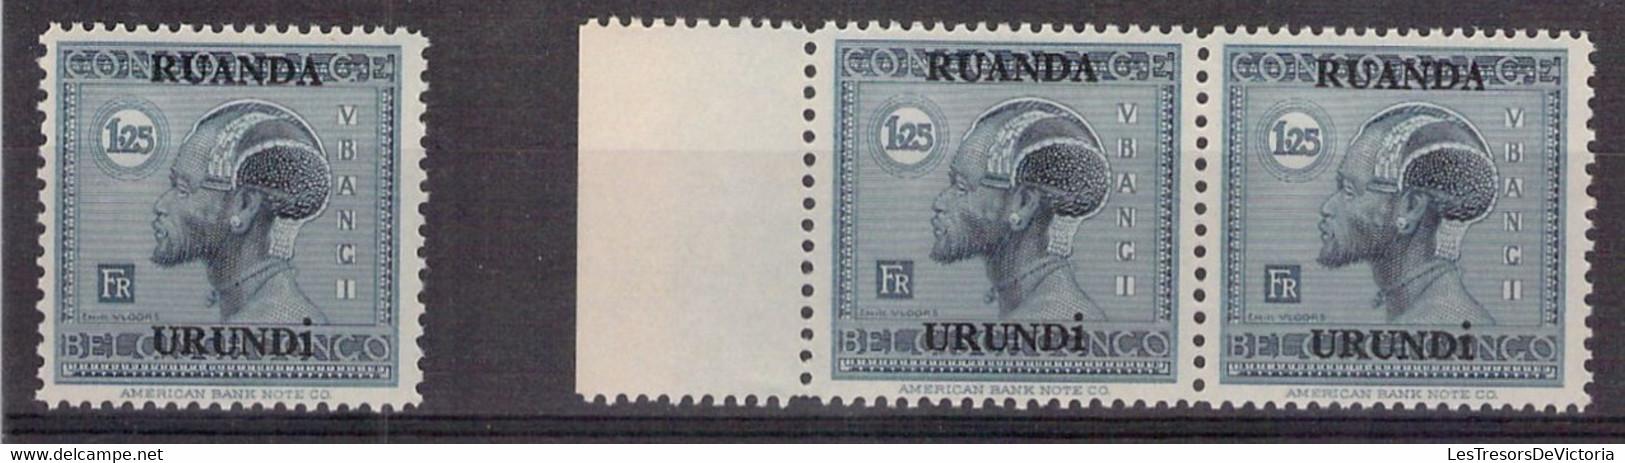 Ruanda Urundi - Lot De 11 COB 73 **MNH 1.25 Bleu Pale - 1925 - Cote 33 COB 2022 - Nuevos